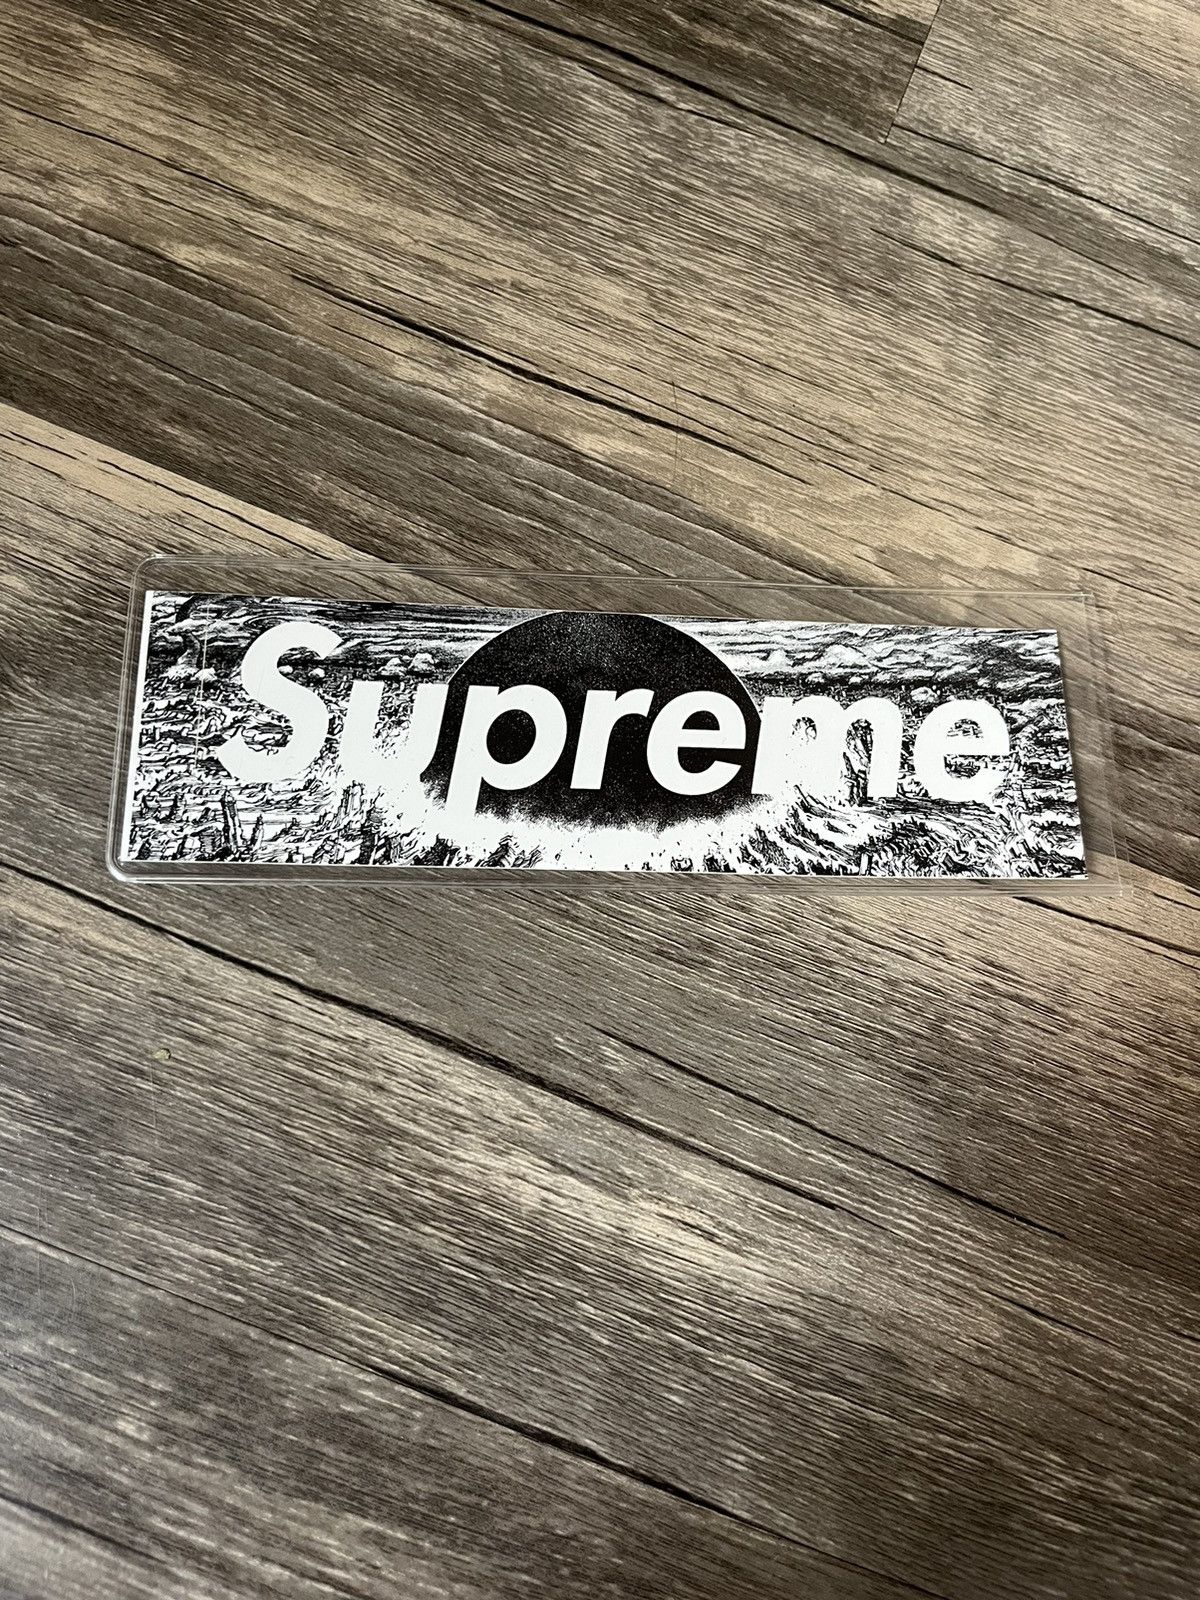 Supreme Supreme Akira Box Logo Sticker [Misprint] | Grailed